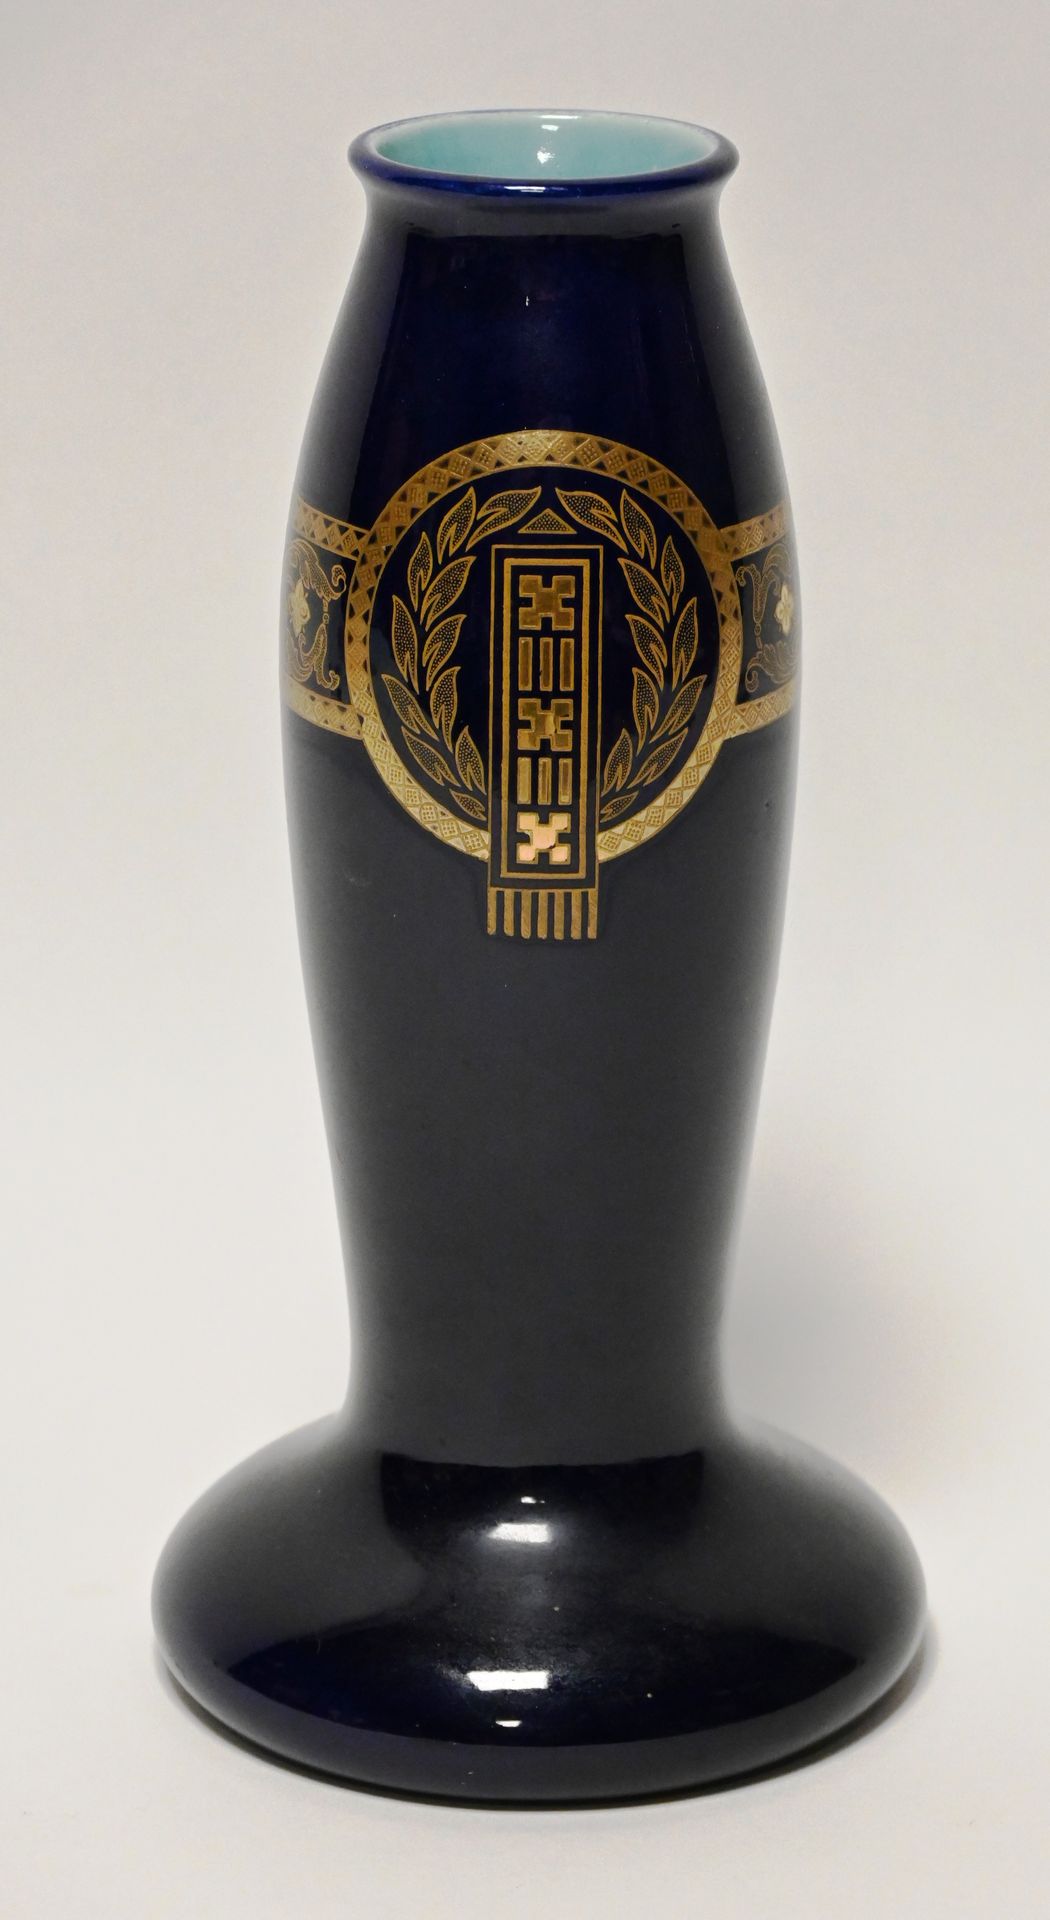 Vase à fond bleu roi 萨勒盖米斯。

花瓶有皇家蓝色背景和镀金的门楣装饰。有签名和编号的。

高：28.5厘米